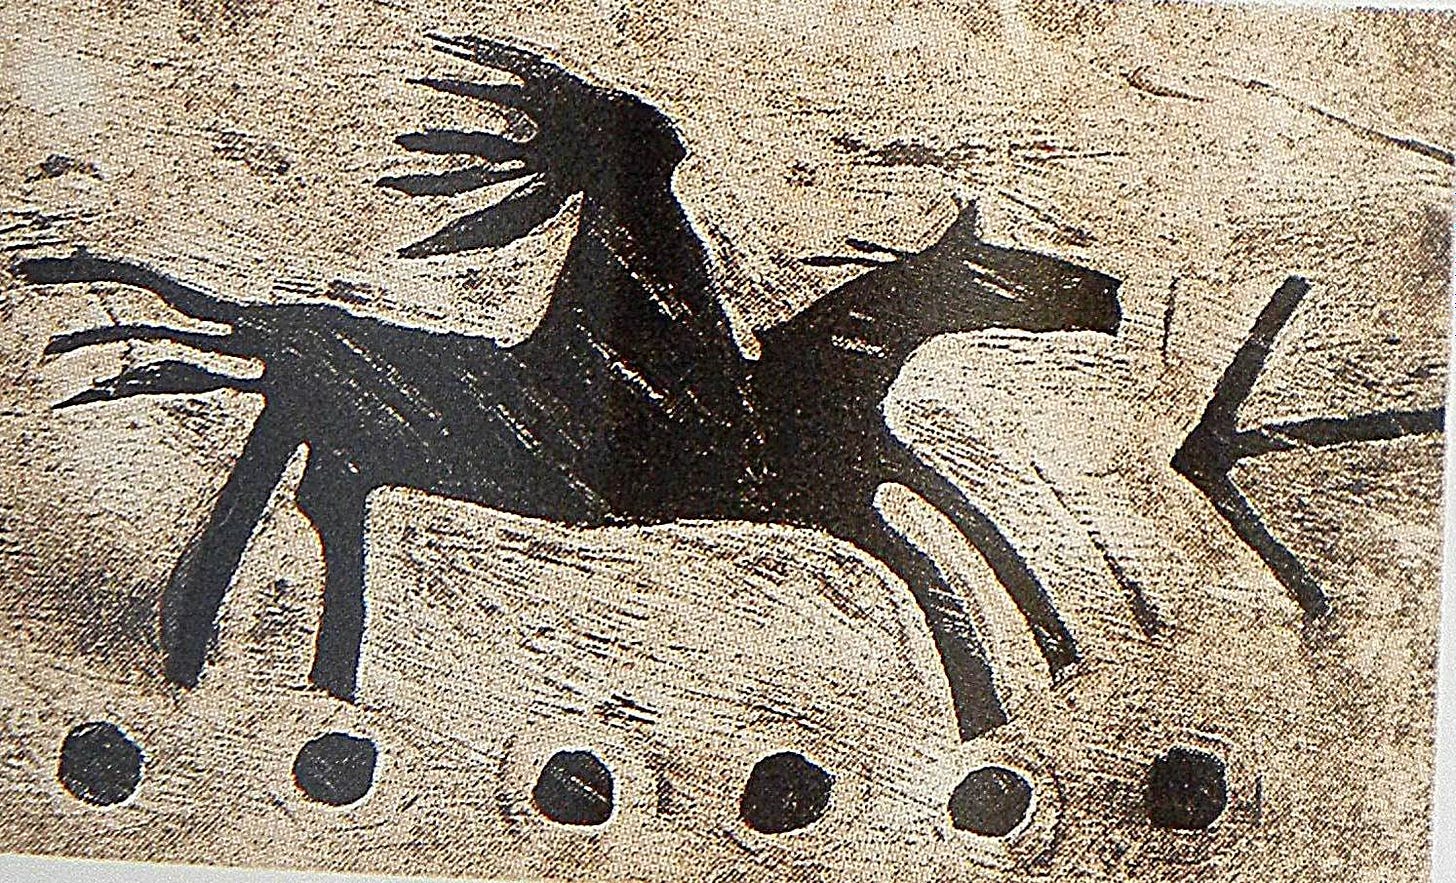 Inniskin Dark Horse Pinot Noir 2011 Label Detail